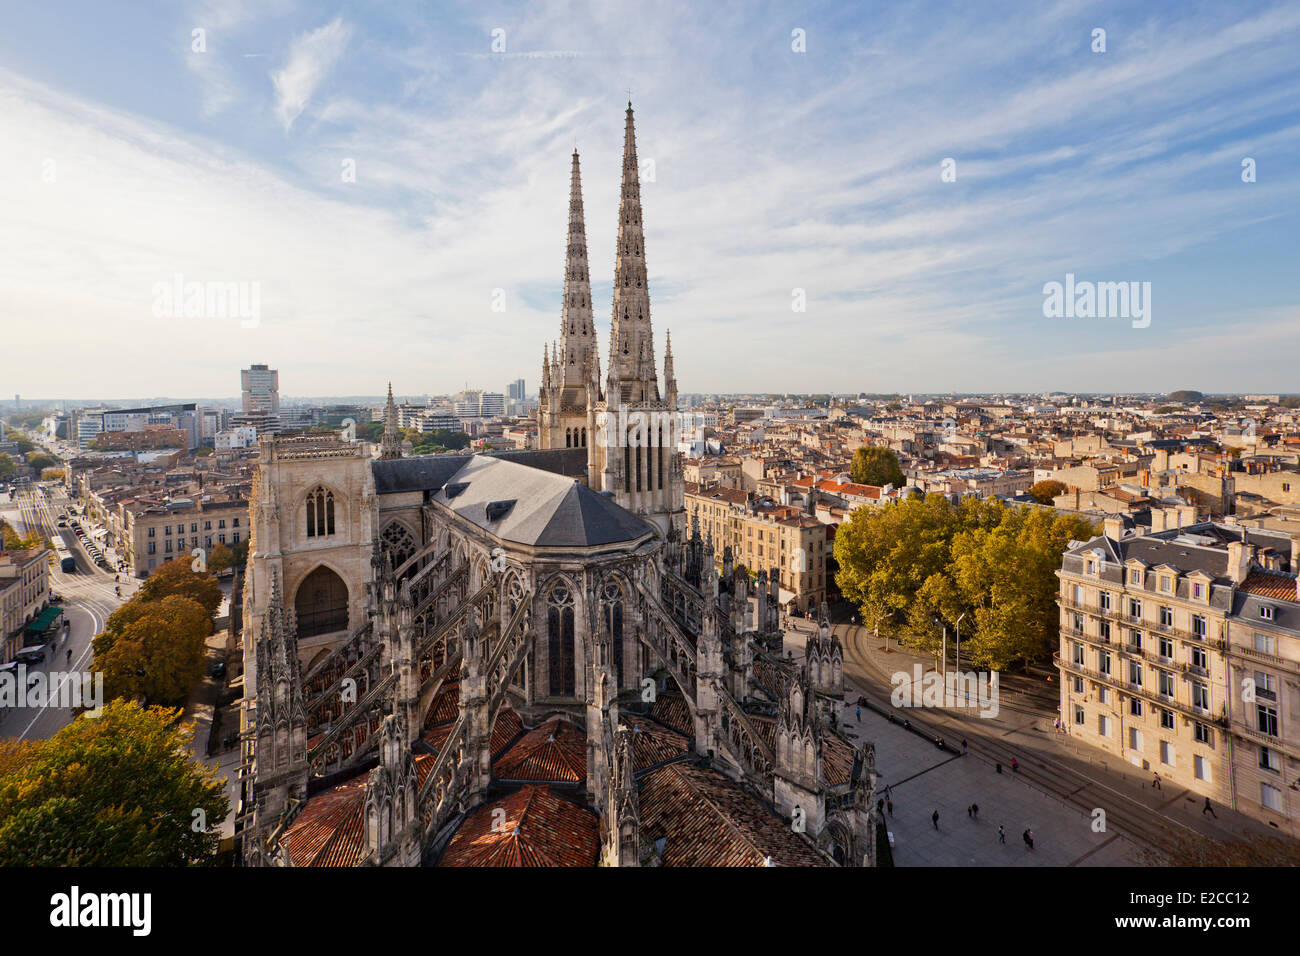 Frankreich, Gironde, Bordeaux, Weltkulturerbe der UNESCO, Saint Andre Kathedrale von der Spitze des Turm Pey Berland Bereich Stockfoto